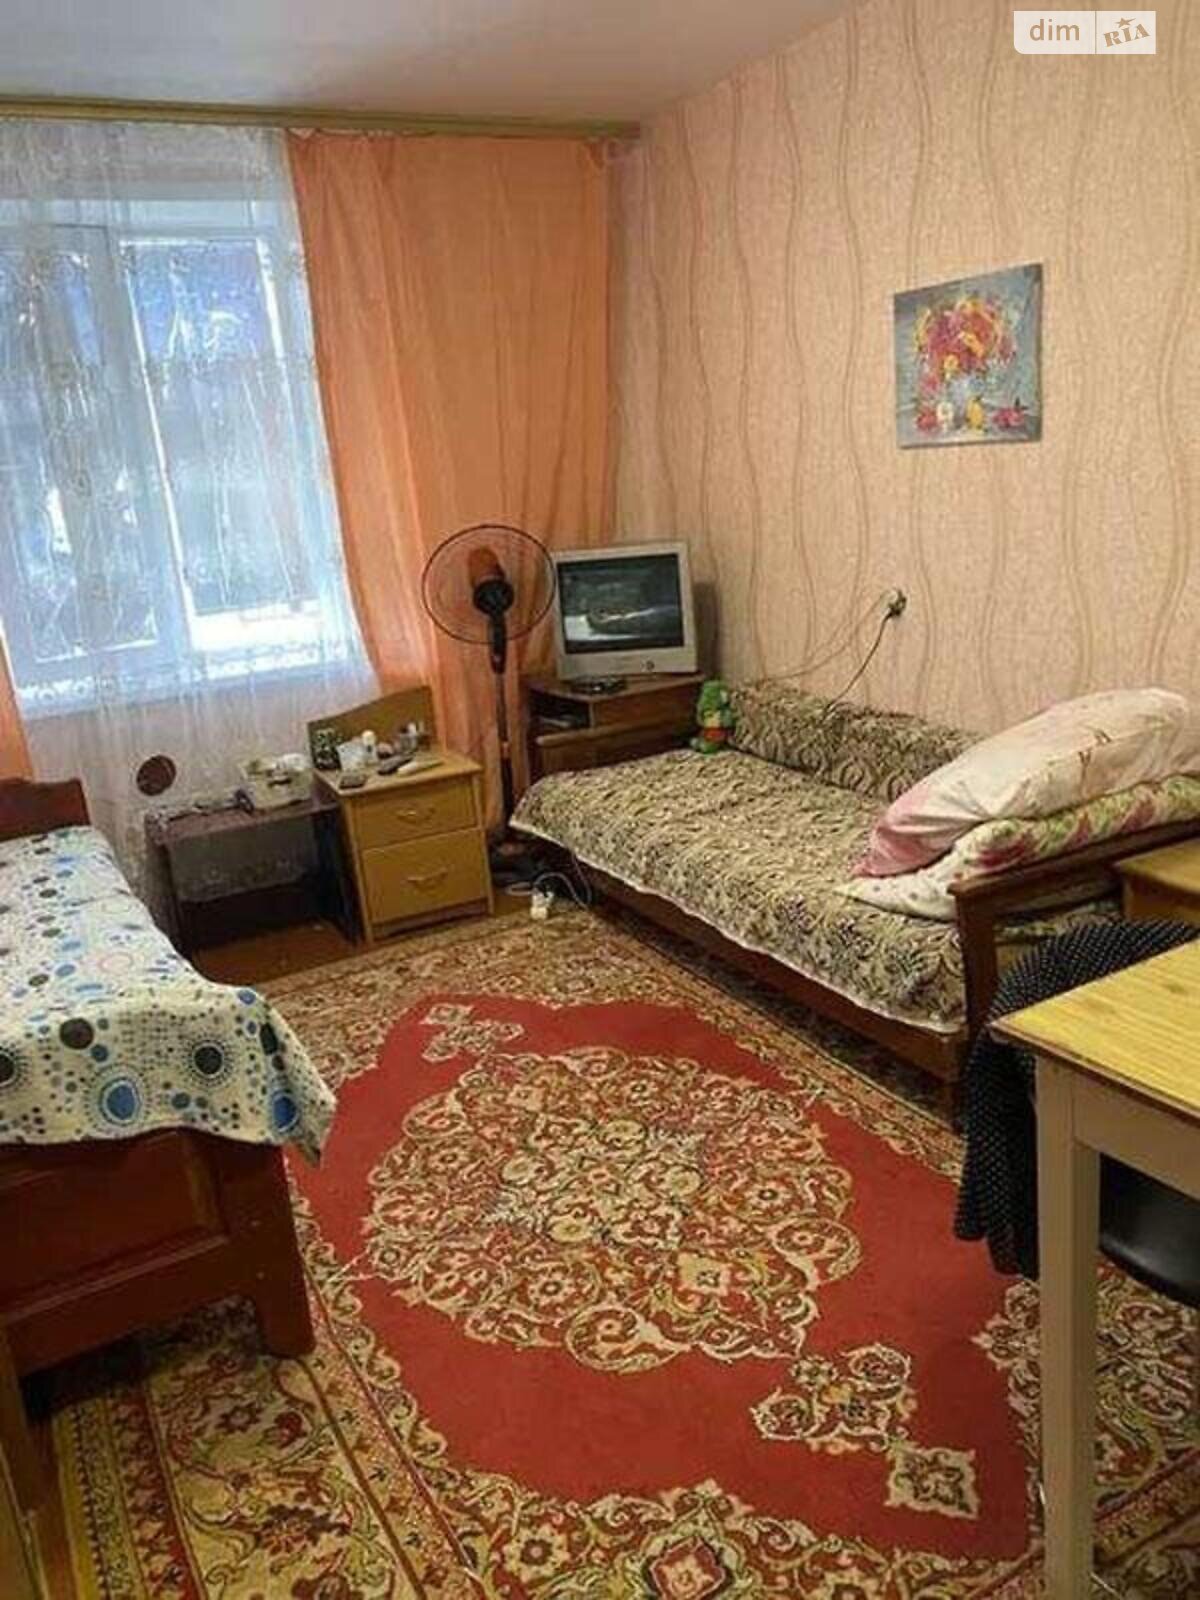 Комната в Киеве, на ул. Сулеймана Стальского 32 в районе Новая Дарница на продажу фото 1